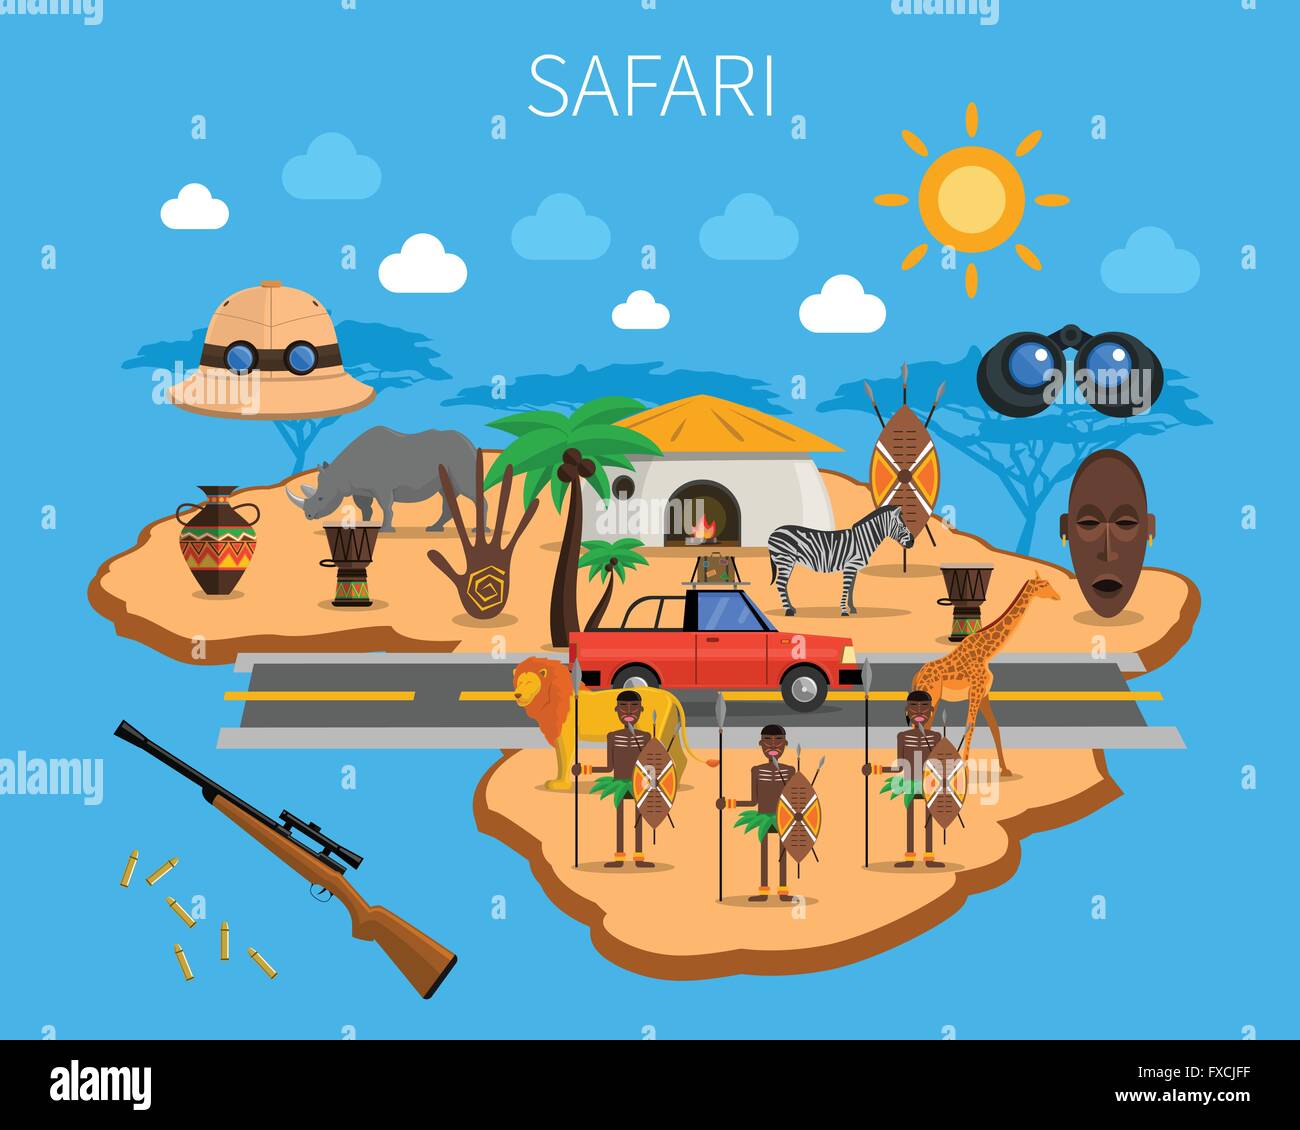 Safari Concept Illustration Stock Vector